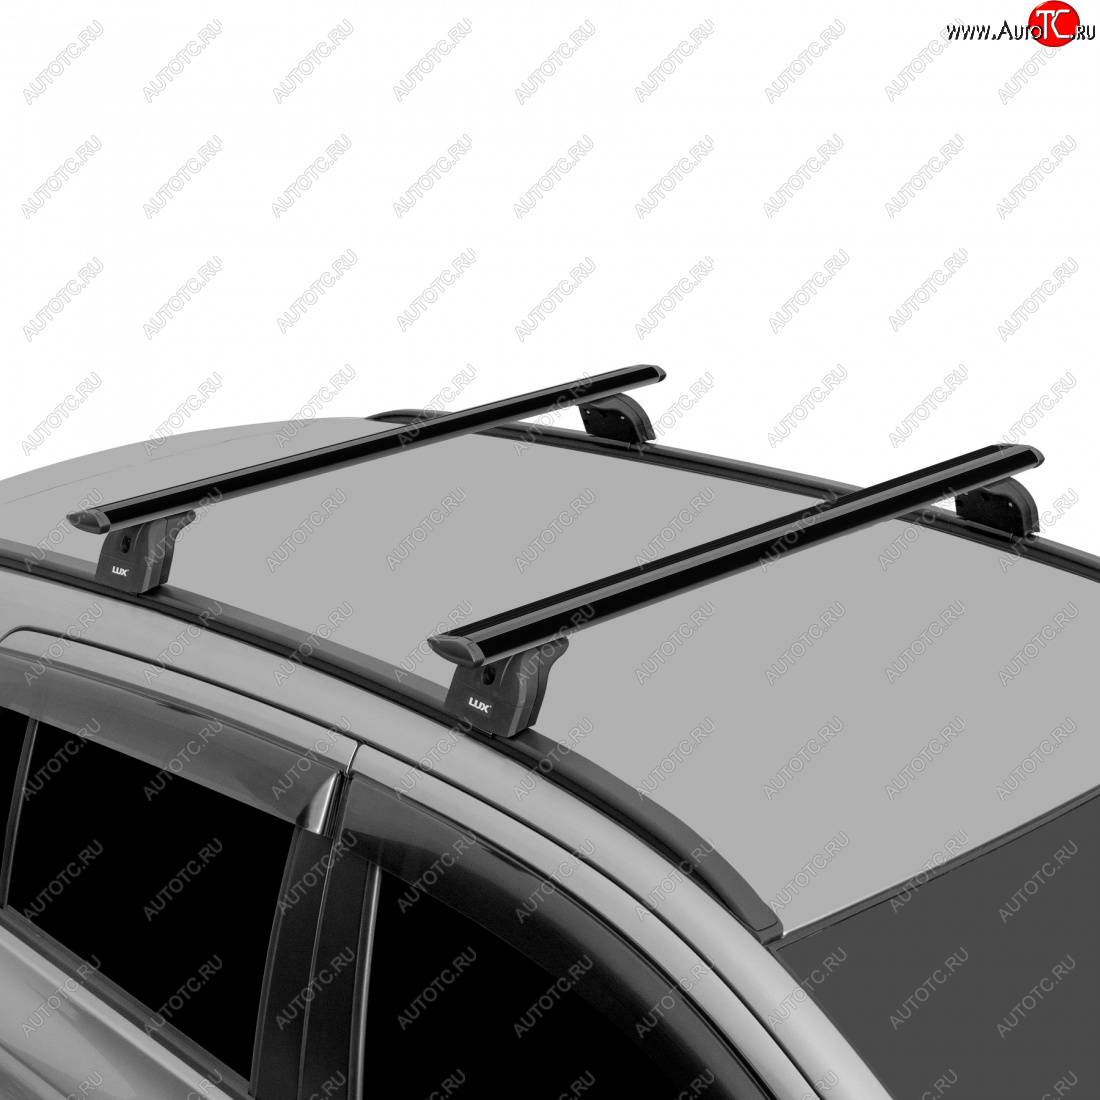 12 797 р. Багажник на крышу с низкими рейлингами сборе LUX  Volvo XC60 (2008-2017) (дуги аэро-трэвэл 120 см, без замка, черный)